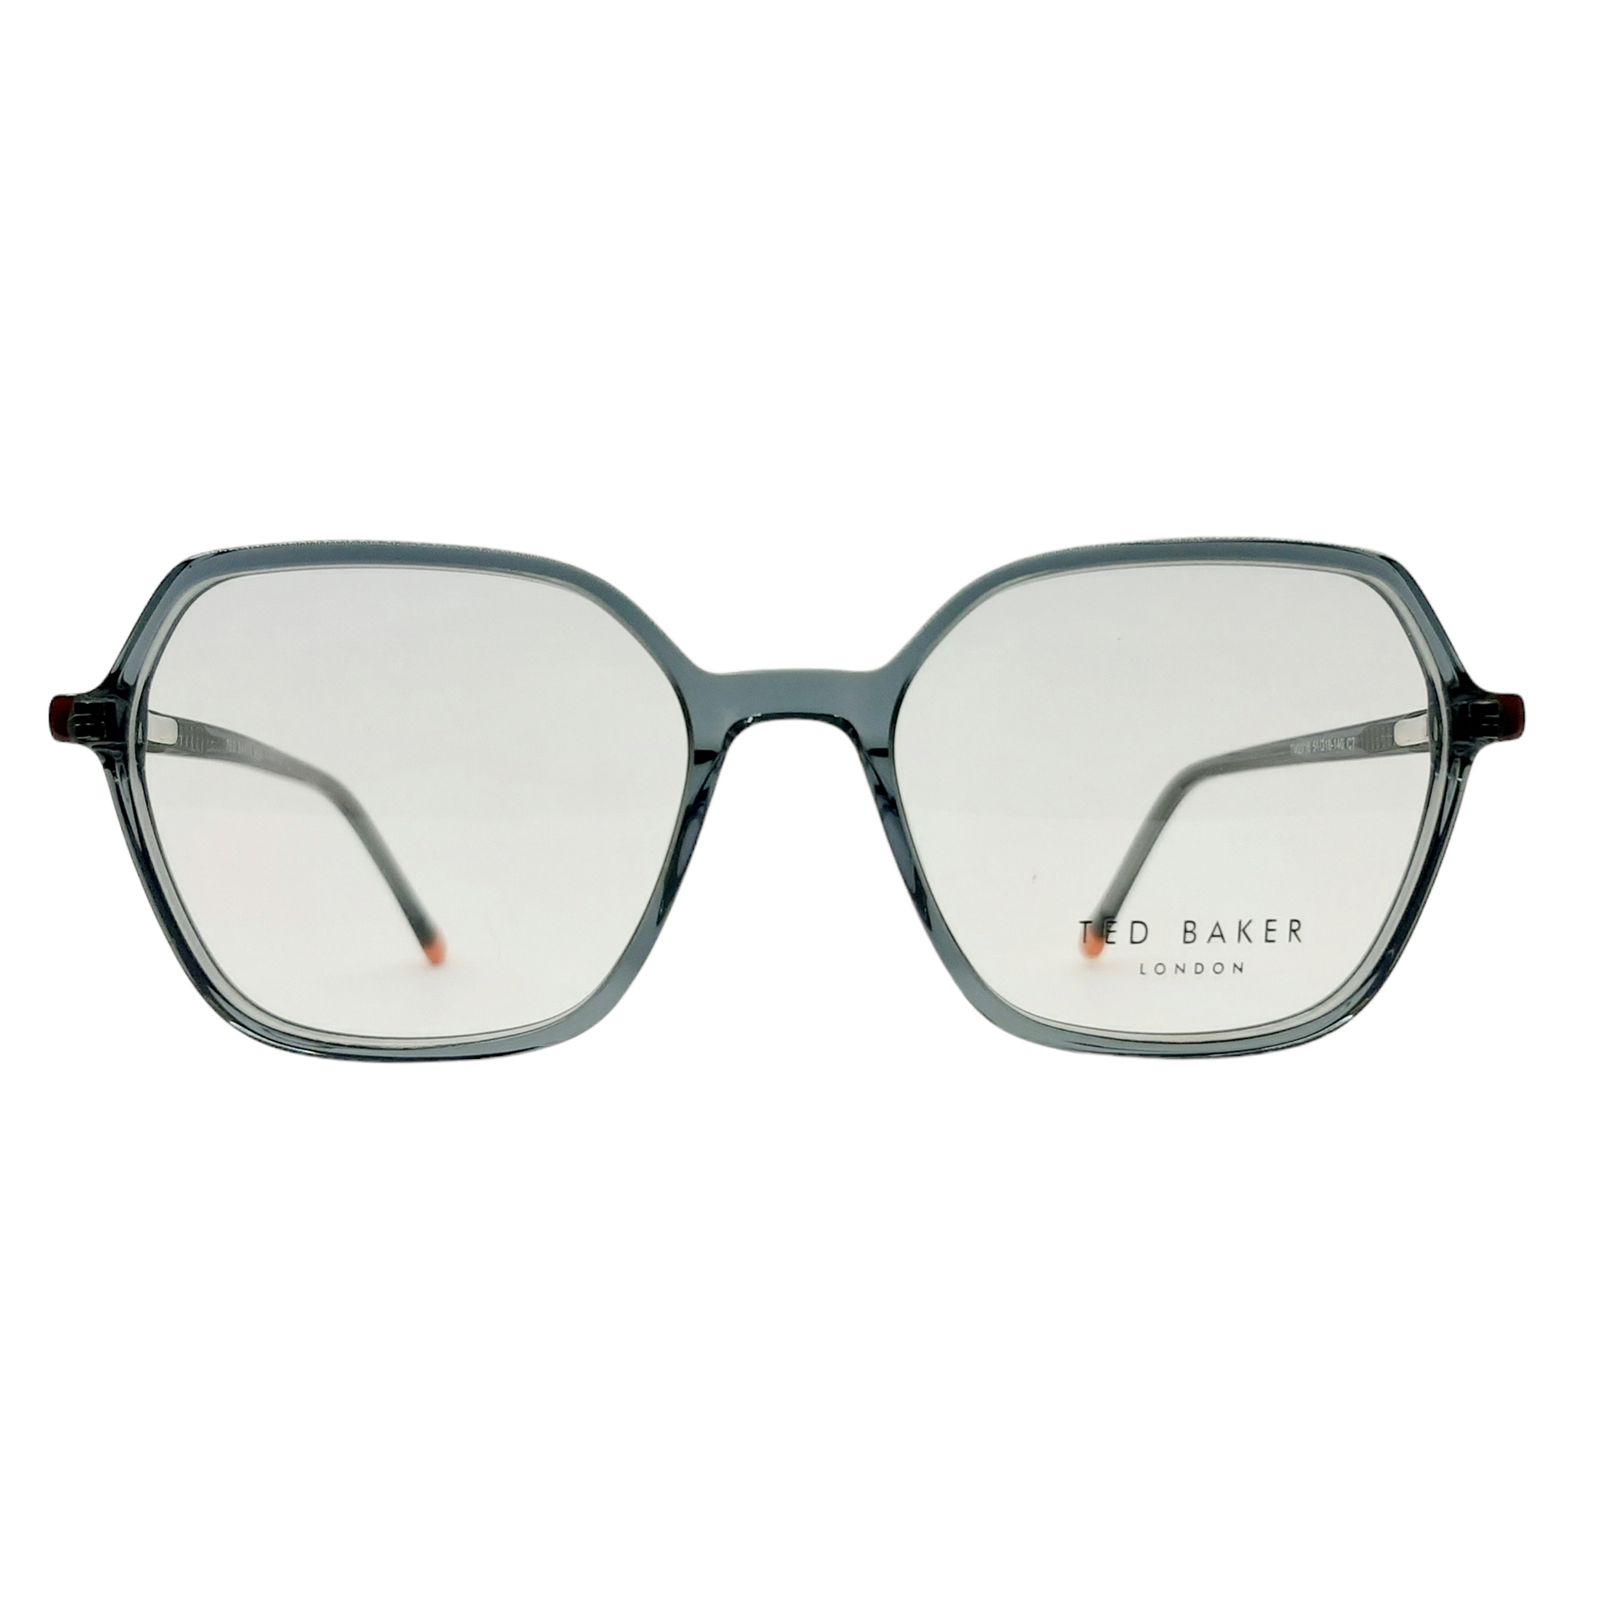 فریم عینک طبی تد بیکر مدل TM2016c7